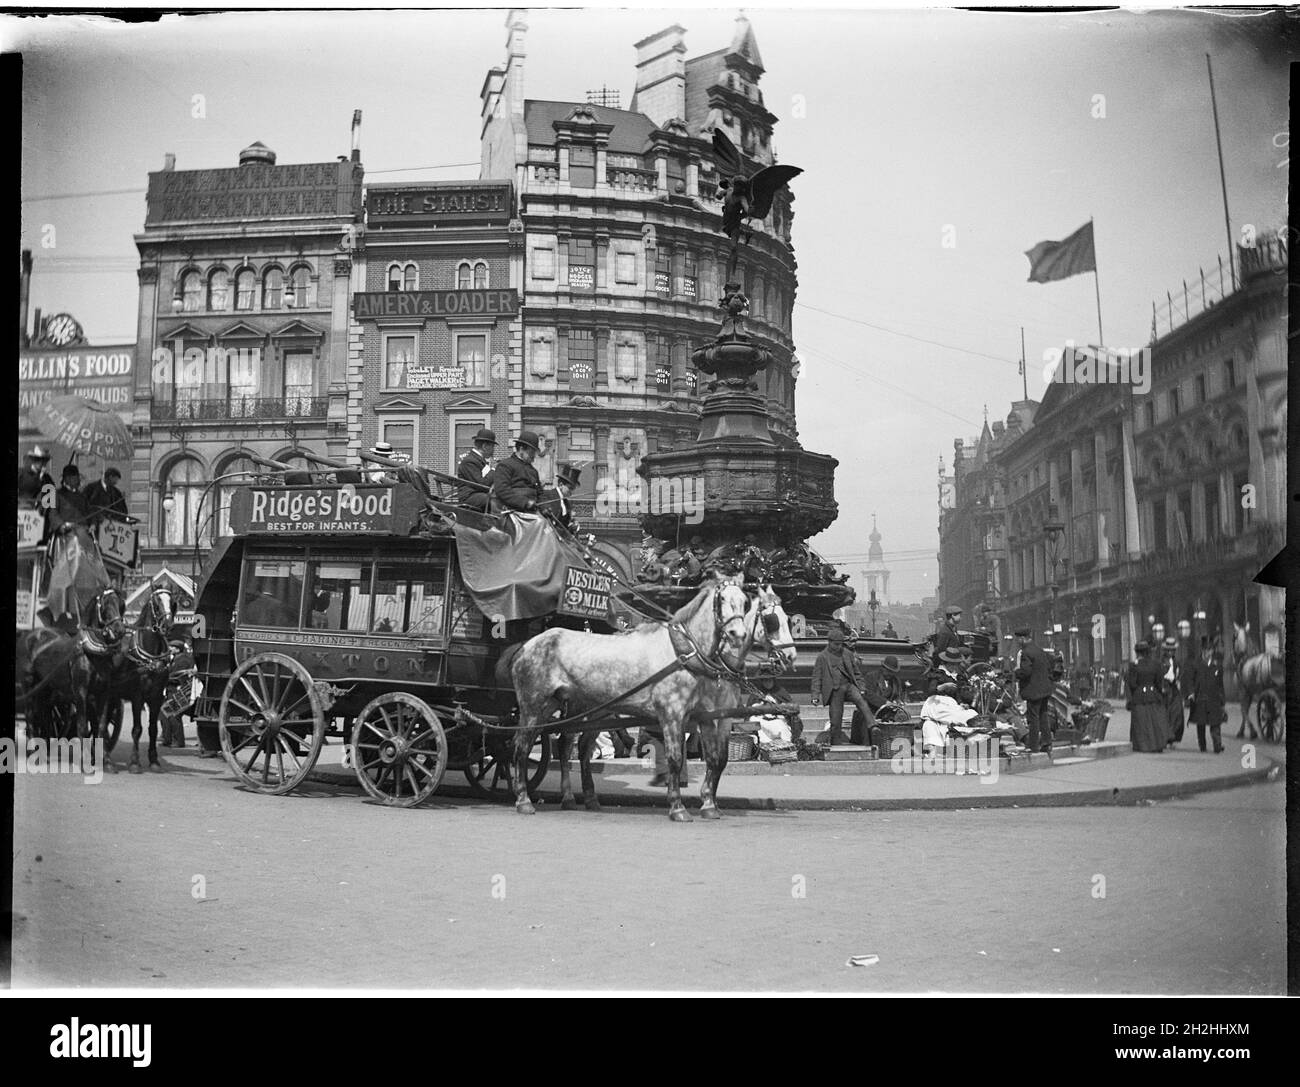 Shaftesbury Memorial Fountain, Piccadilly Circus, City of Westminster, Greater London Authority, 1895-1905. Blick auf den Piccadilly Circus aus dem Südwesten, mit Bussen, die vorbeifahren, und Straßenverkäufern, die rund um den Shaftesbury Memorial Fountain (auch bekannt als Eros) sitzen. Dieses Foto scheint irgendwann zwischen 1895-1905 aufgenommen worden zu sein, und daher scheint es unwahrscheinlich, dass das Foto von Charles William Prickett, der 1896 geboren wurde, aufgenommen wurde. Die Fotografien im Rest seiner Sammlung wurden zwischen 1920 und 1940 aufgenommen. Stockfoto